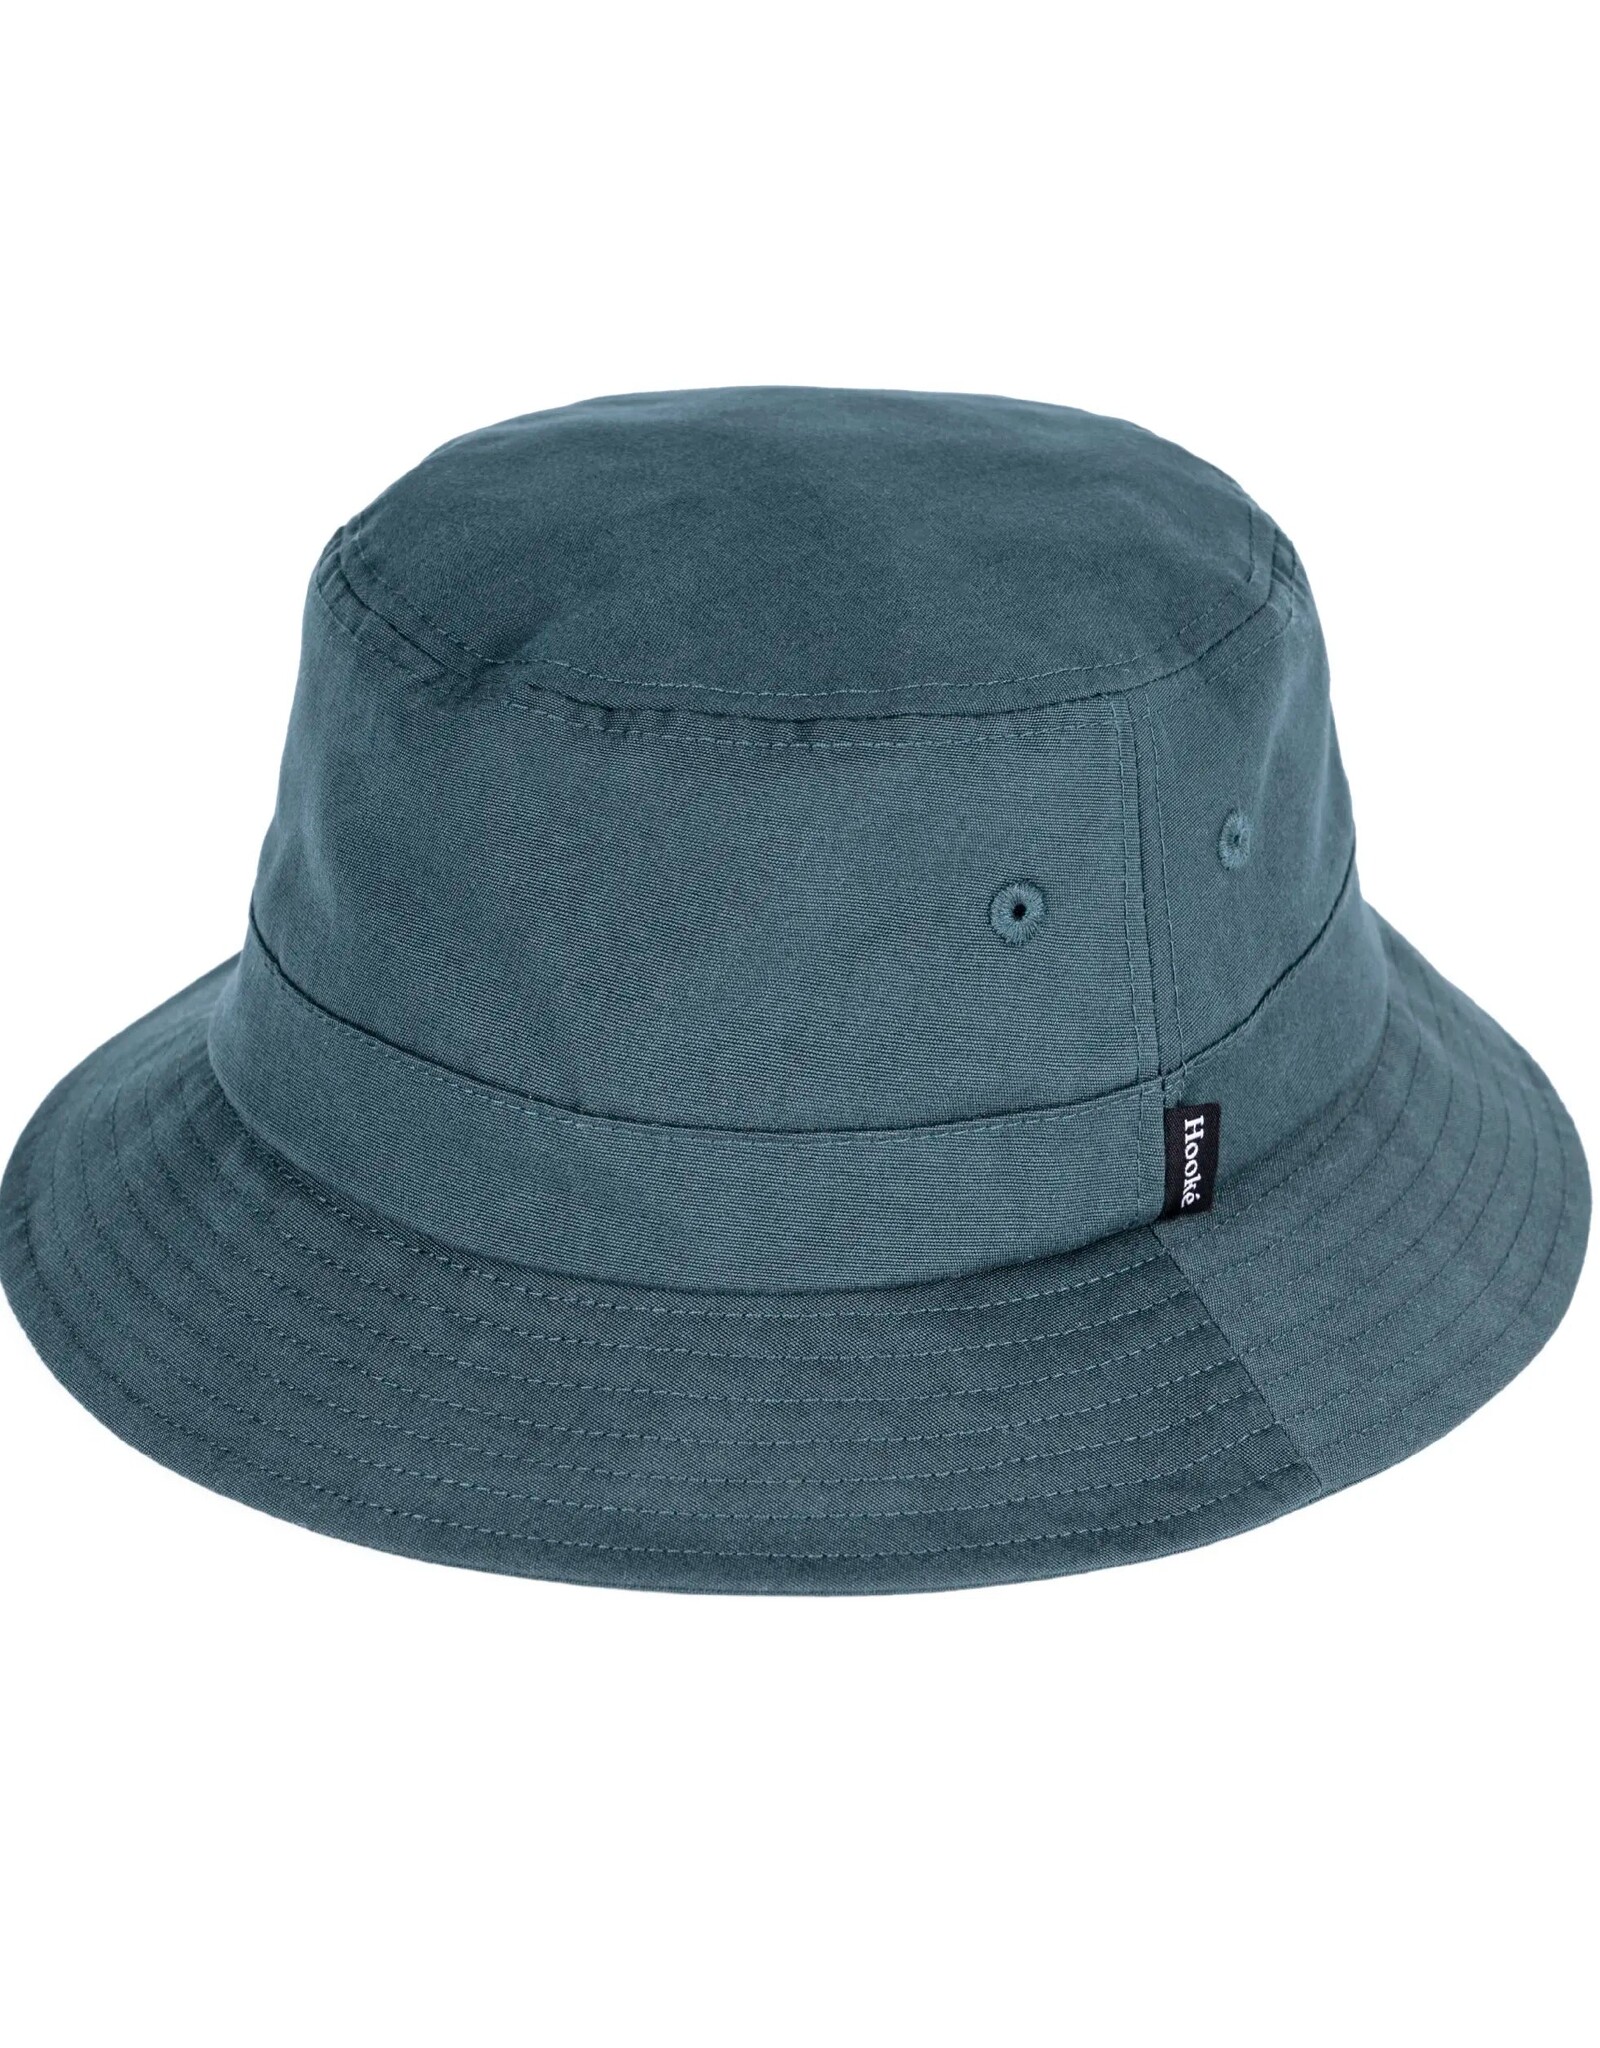 Hooké Hooké Outdoors Bucket Hat